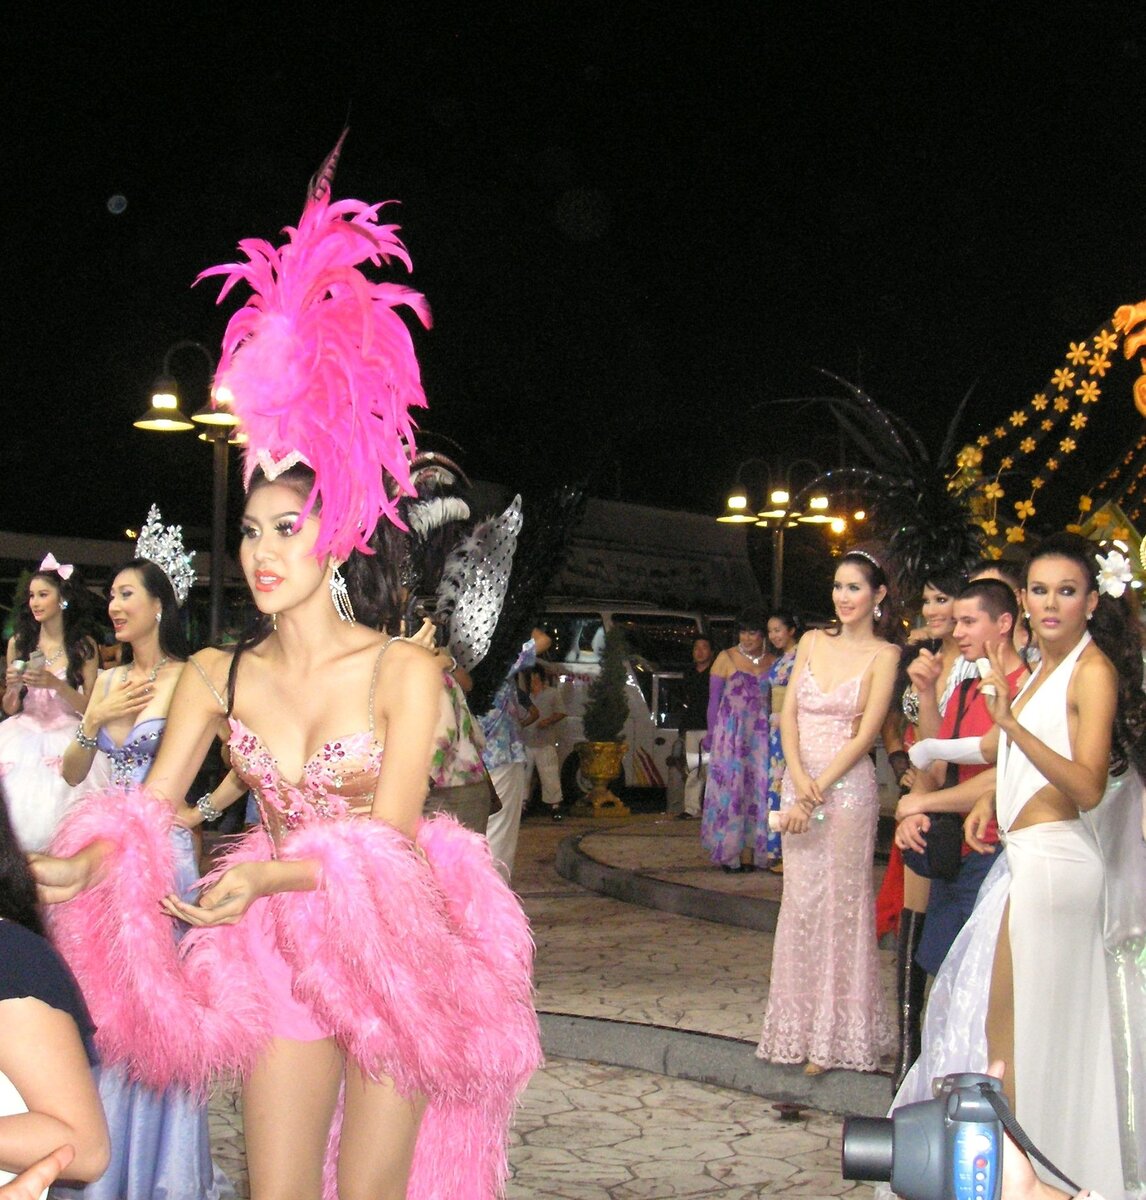 Бразильский карнавал порно русская девушка рассматривает текст с виртуальной страницы